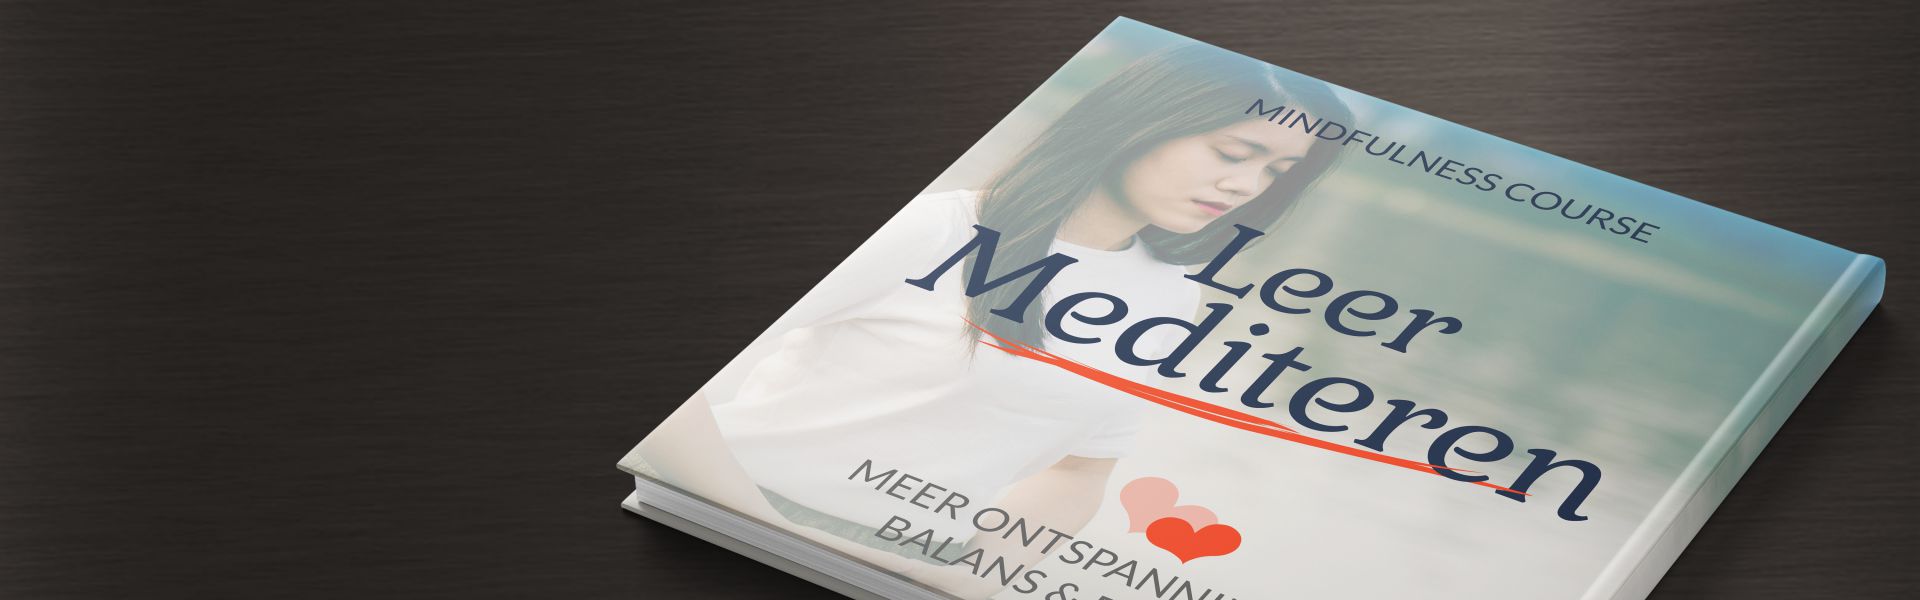 Leer Mediteren: Mindfulness Course